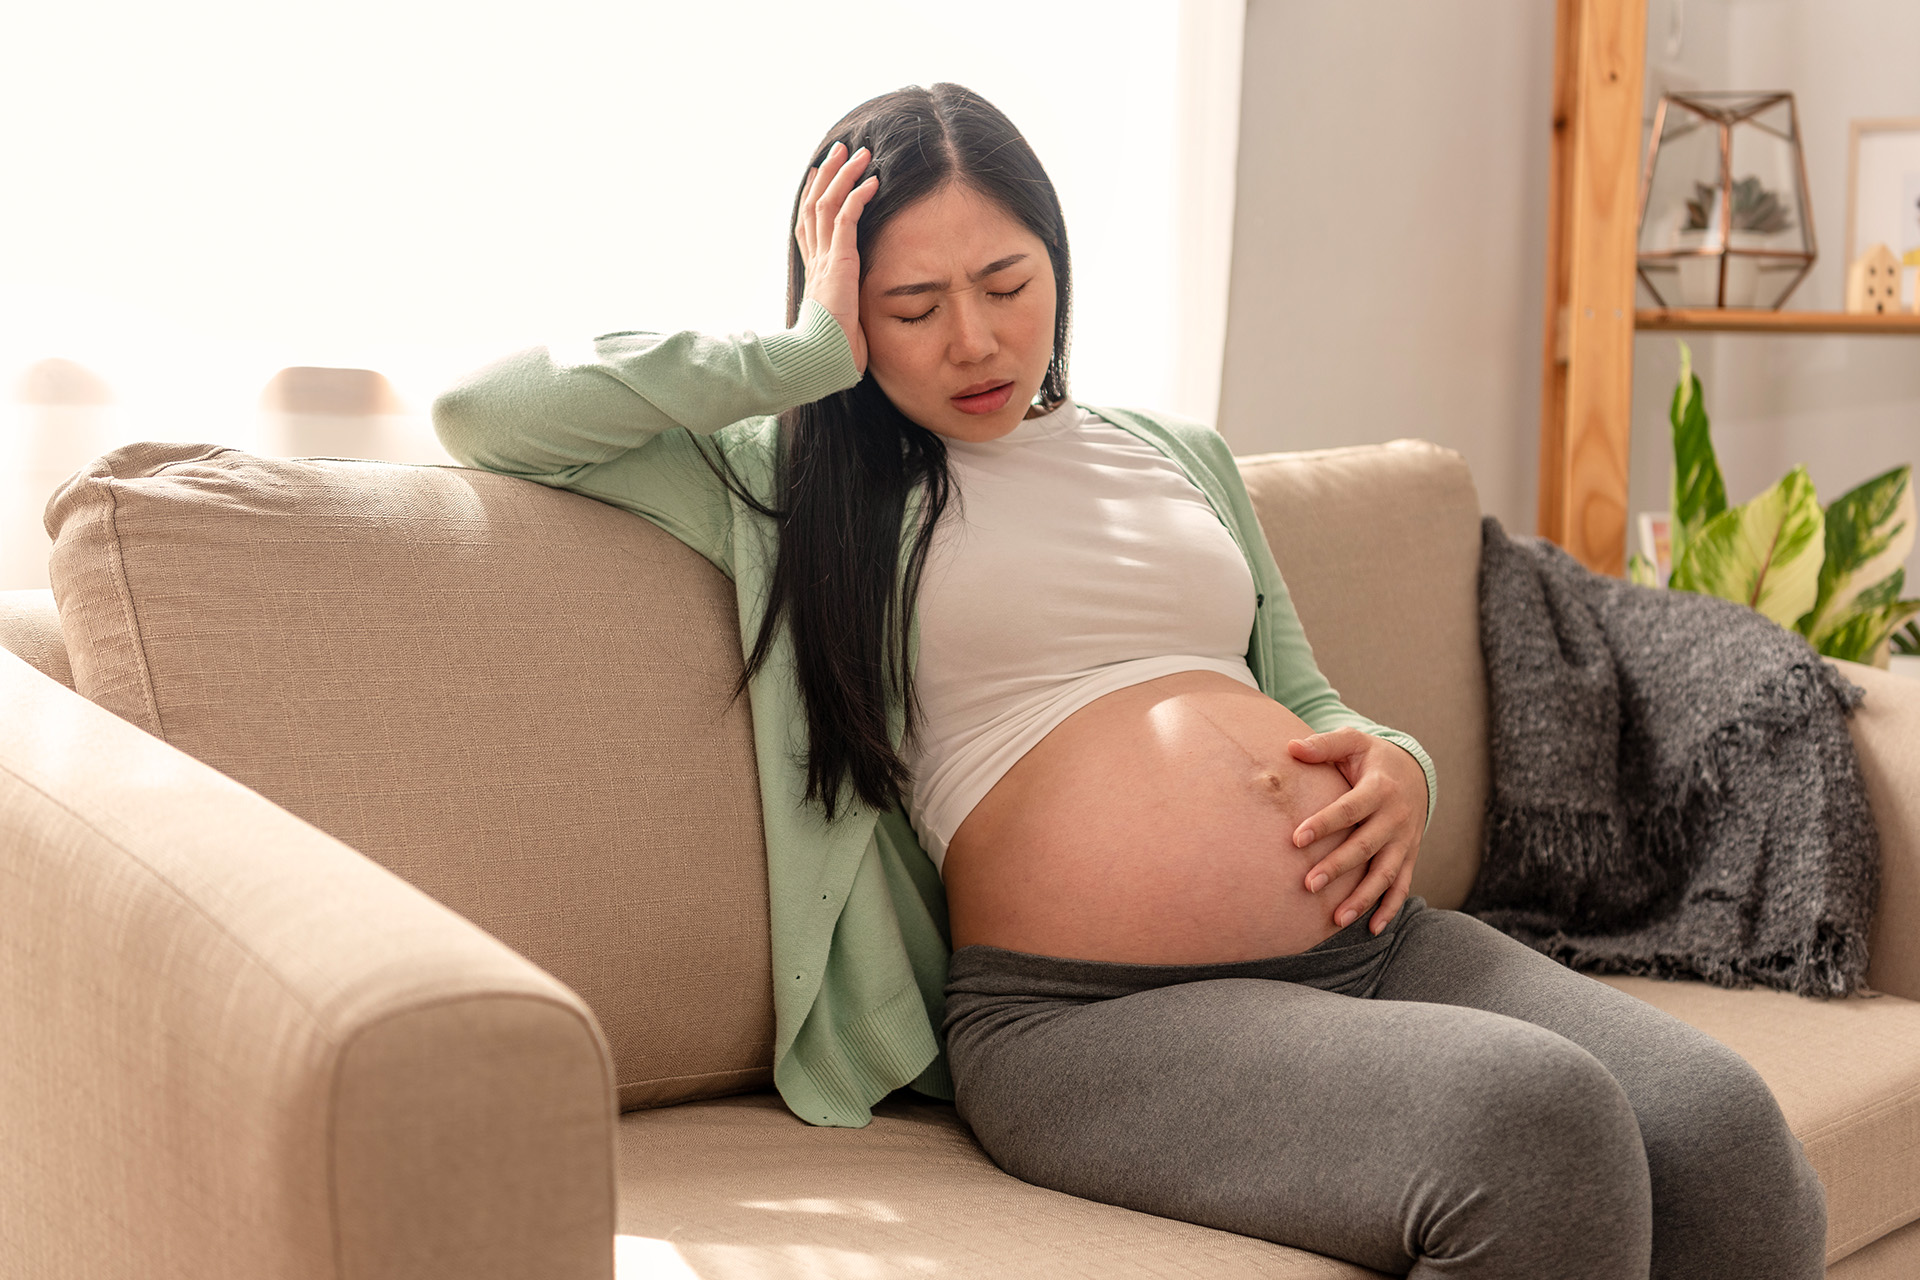  Прегряване по време на бременност: признаци, причини, рискове и превенция 